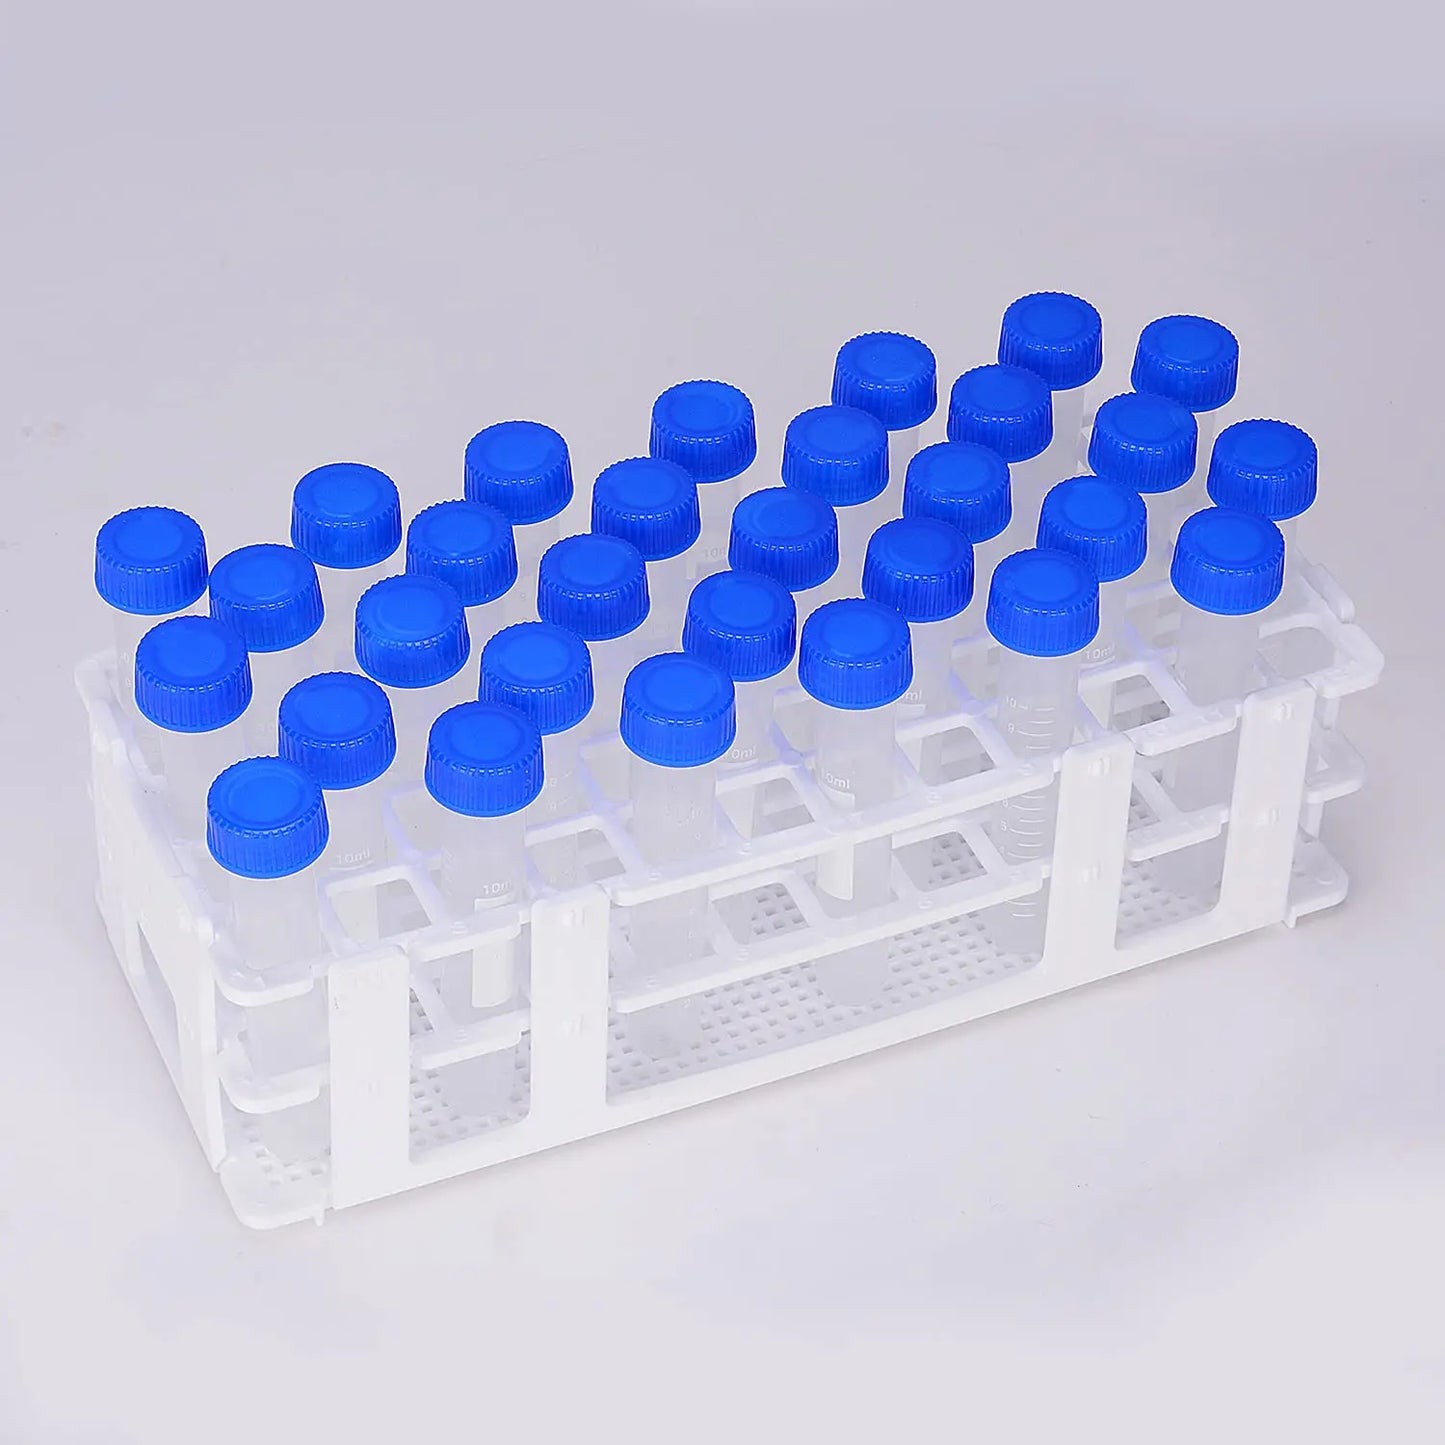 White Plastic Test Tube Rack, 60-Place Racks